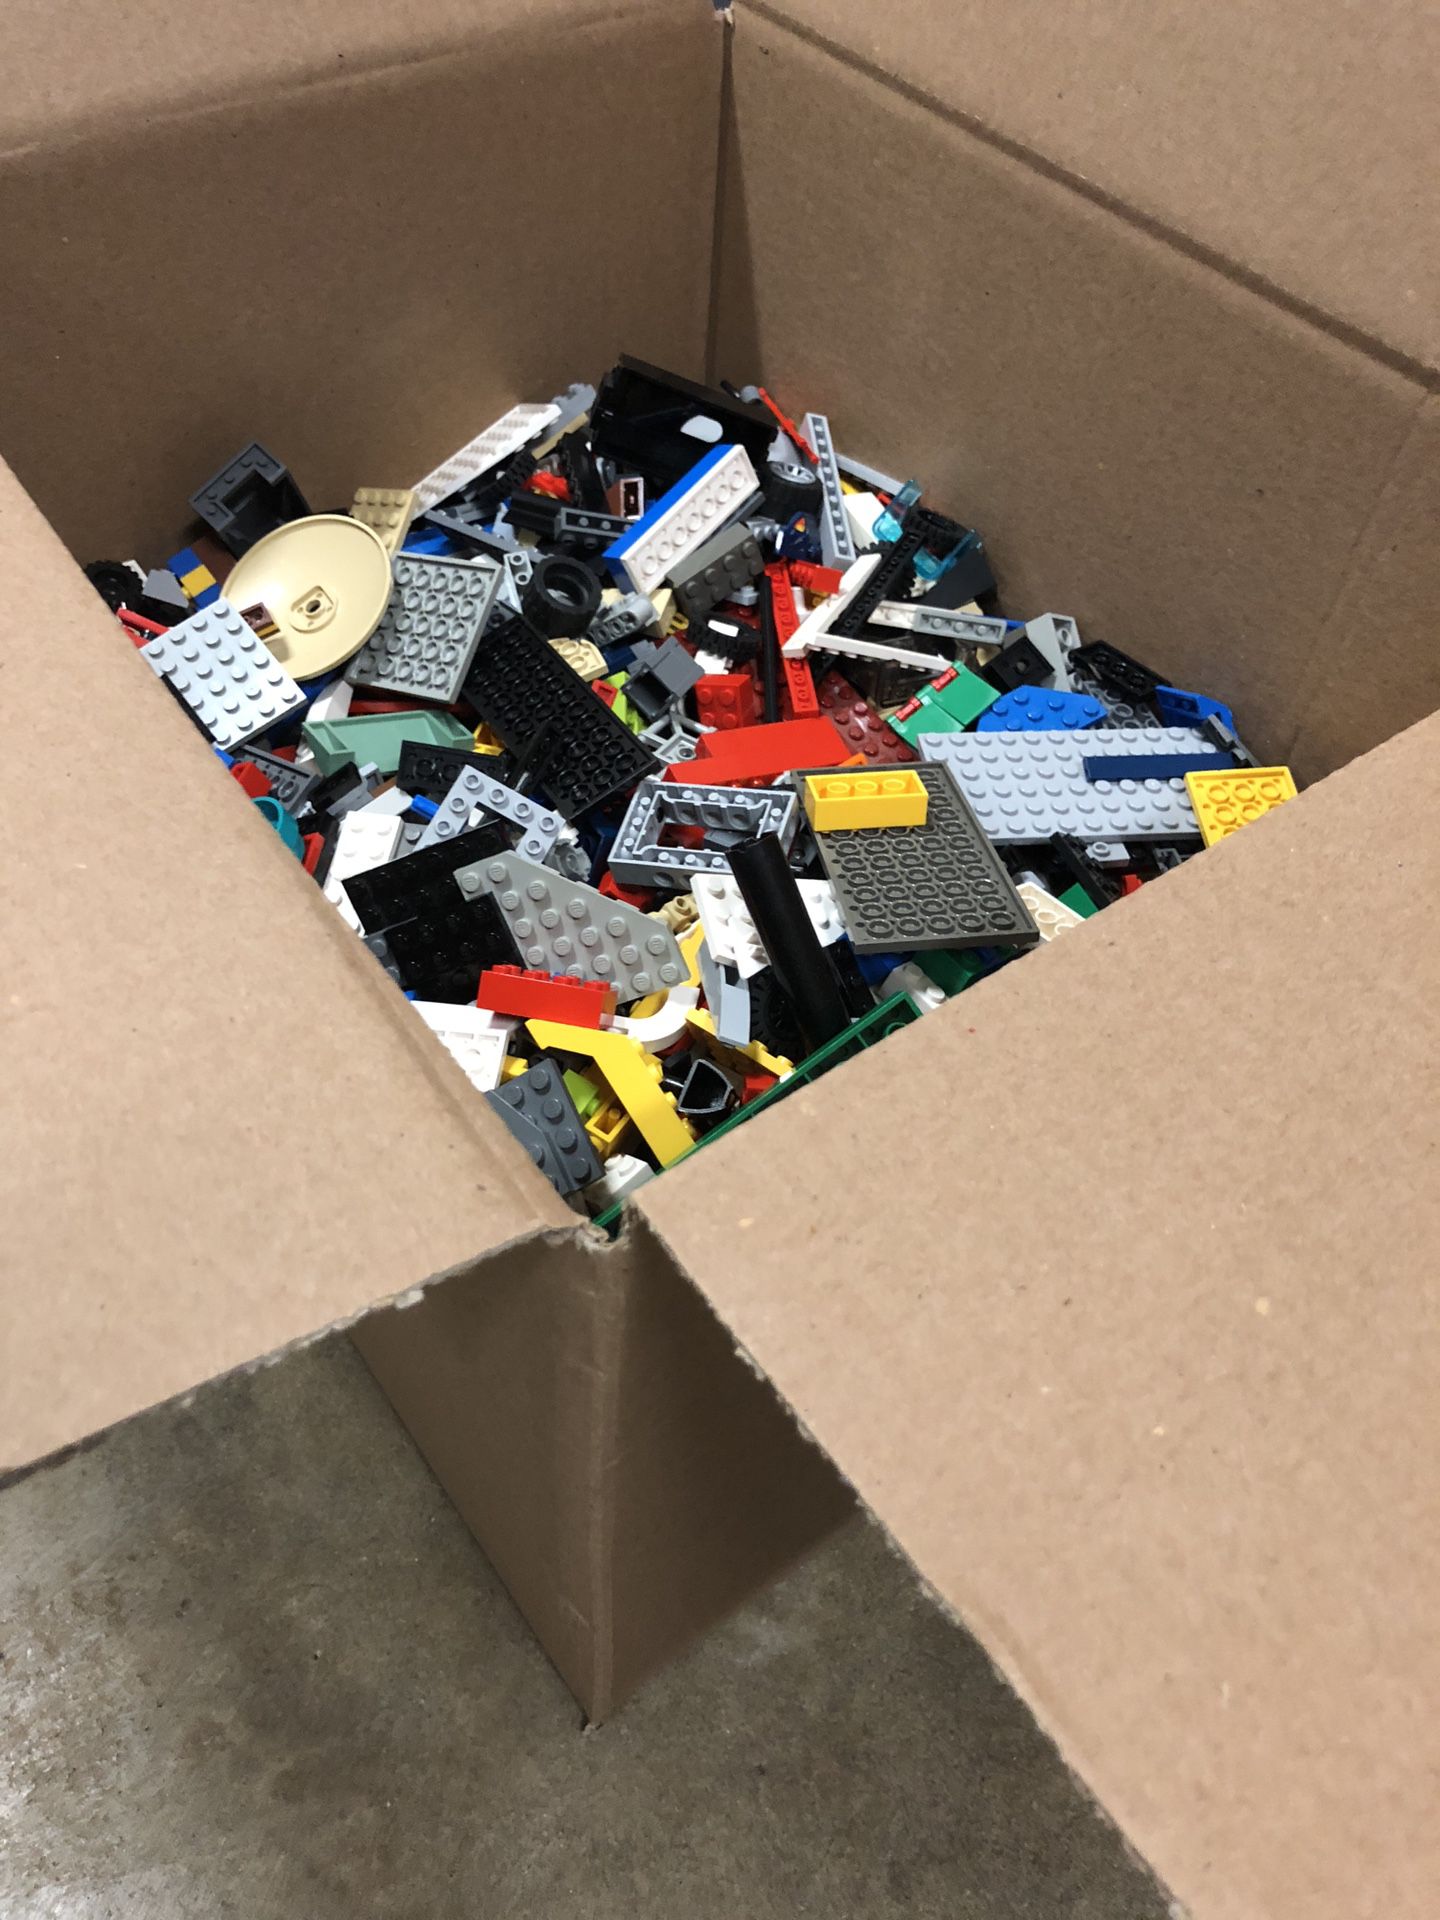 Big box of legos!